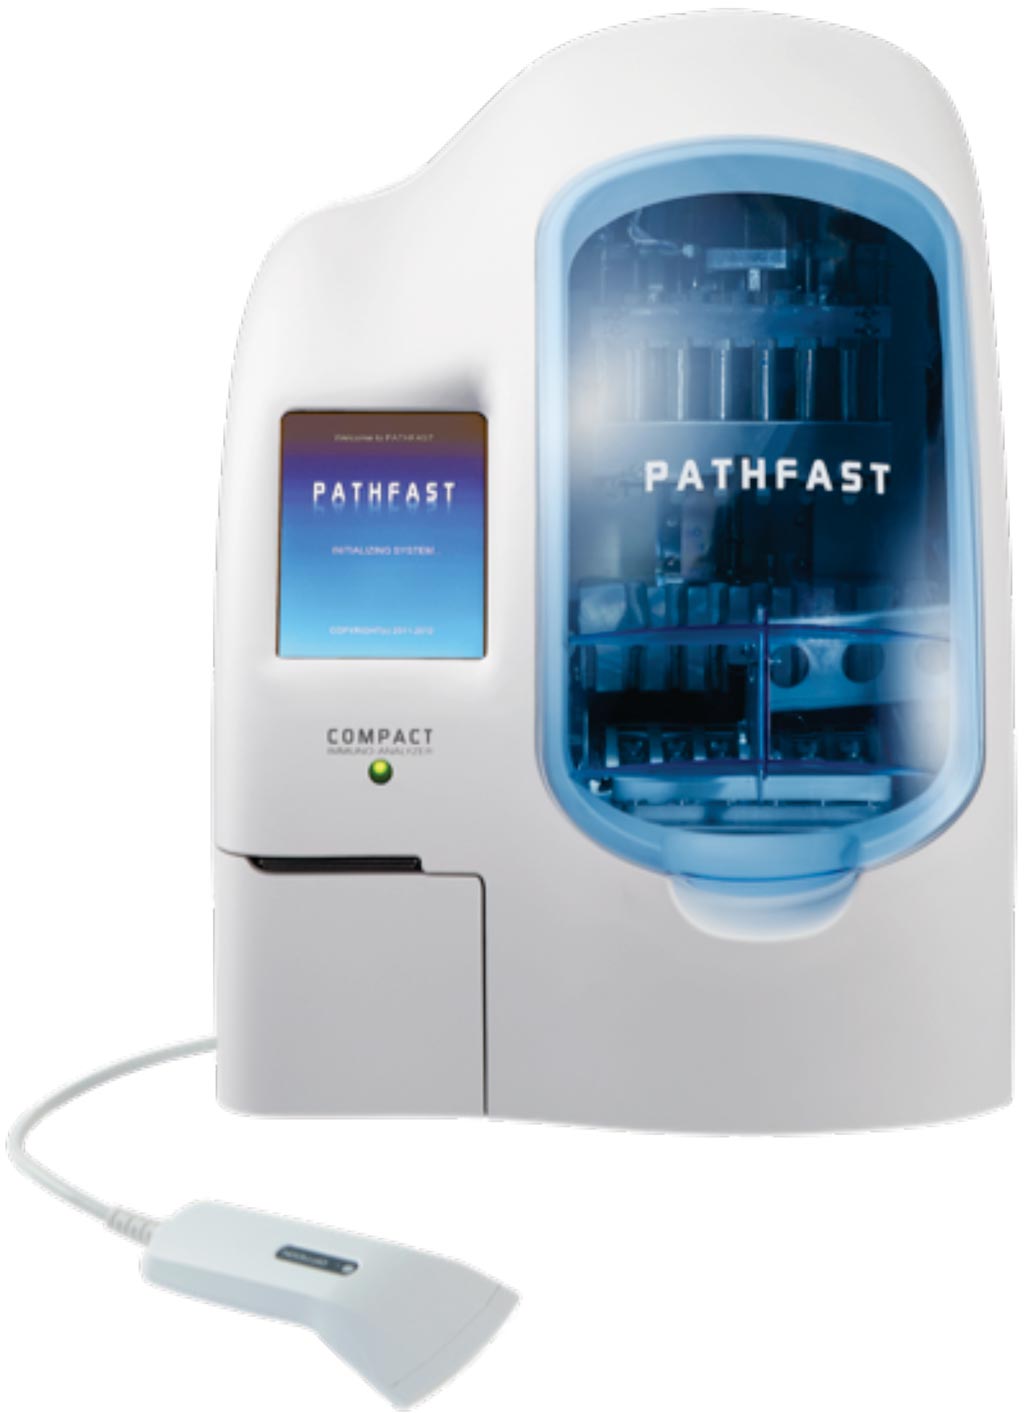 Image: The PATHFAST compact immunoanalyzer used for measuring cardiac troponin (Photo courtesy of Mitsubishi Chemical Europe).